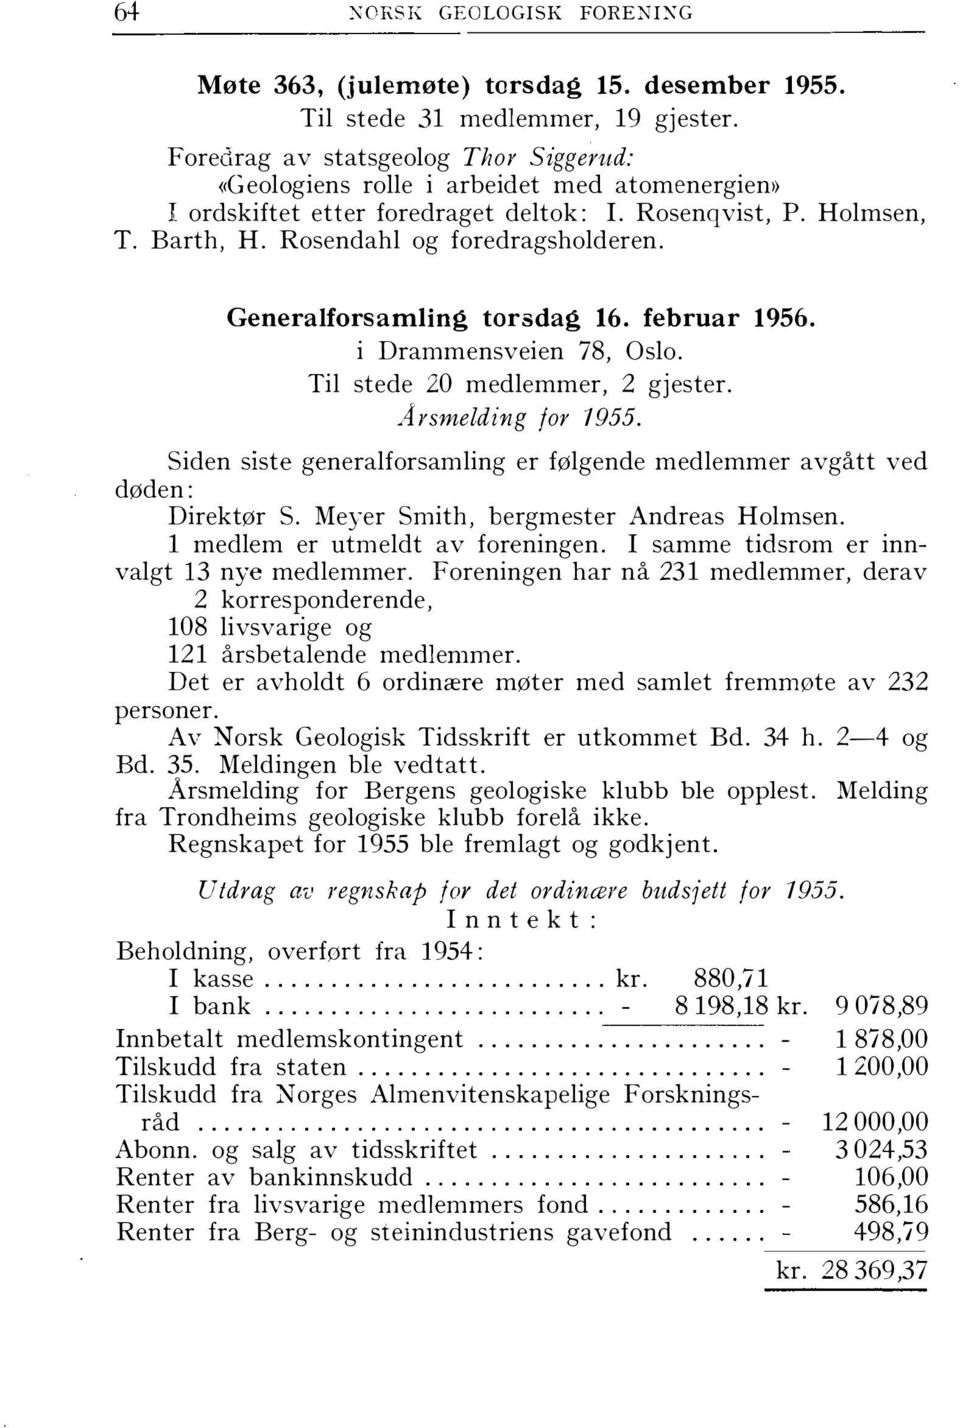 Generalforsamling torsdag 16. februar 1956. i Drammensveien 78, Oslo. Til stede 20 medlemmer, 2 gjester. Arsmelding for 1955.